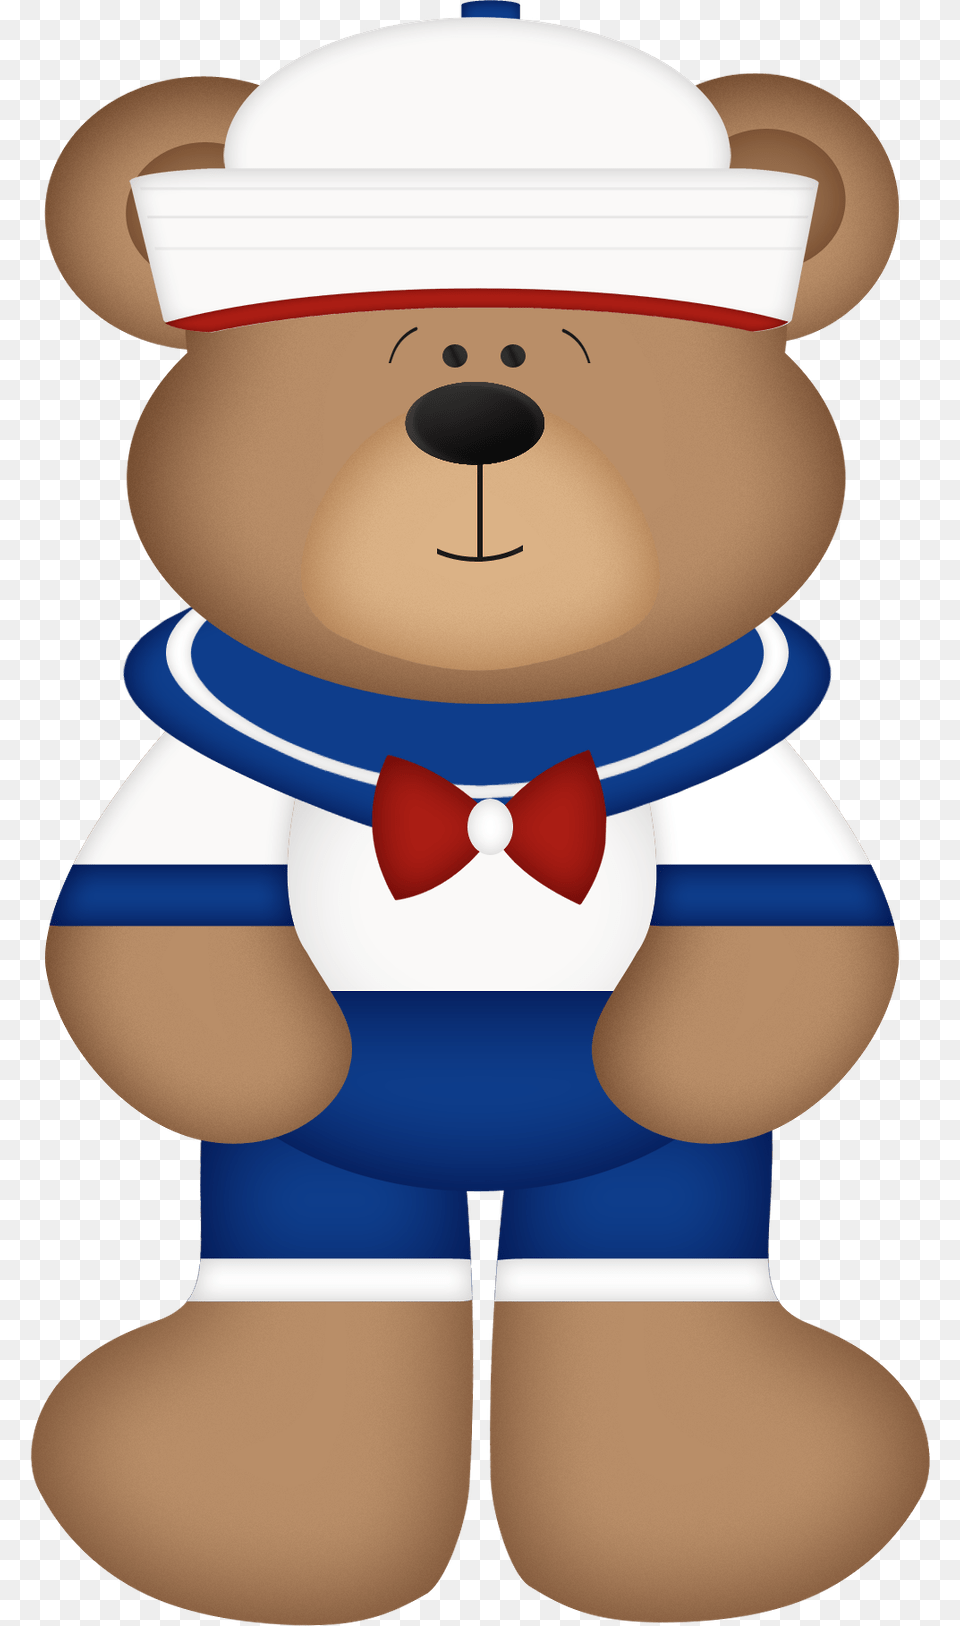 Sailor Clipart Teddy Bear Sailor Teddy Bear Clipart, Accessories, Formal Wear, Tie, Teddy Bear Png Image